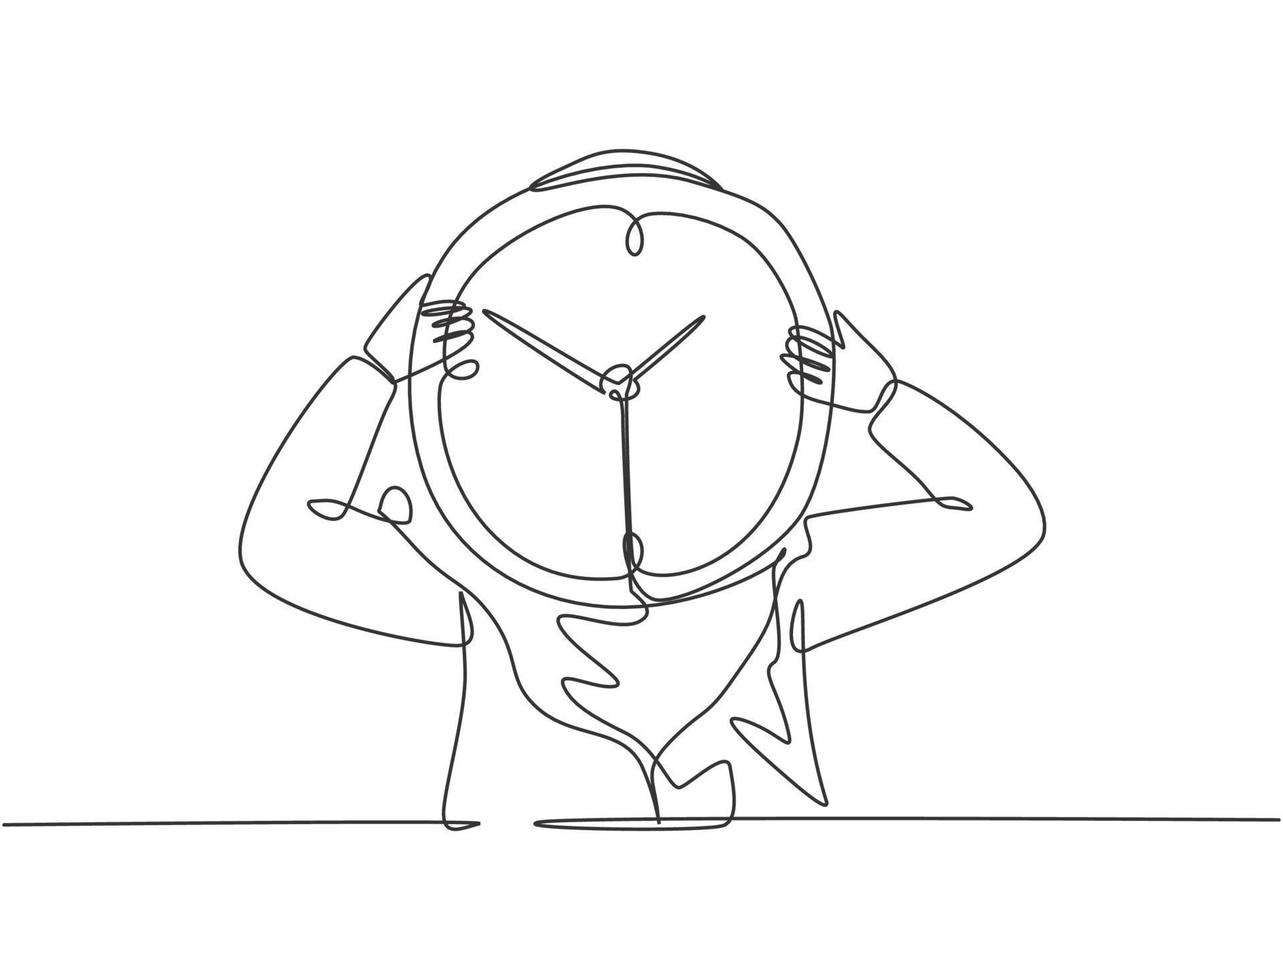 singolo disegno a tratteggio di una giovane donna d'affari araba che tiene un orologio analogico gigante davanti alla sua testa. concetto di metafora della disciplina del tempo di affari. illustrazione vettoriale grafica di disegno di disegno di linea continua